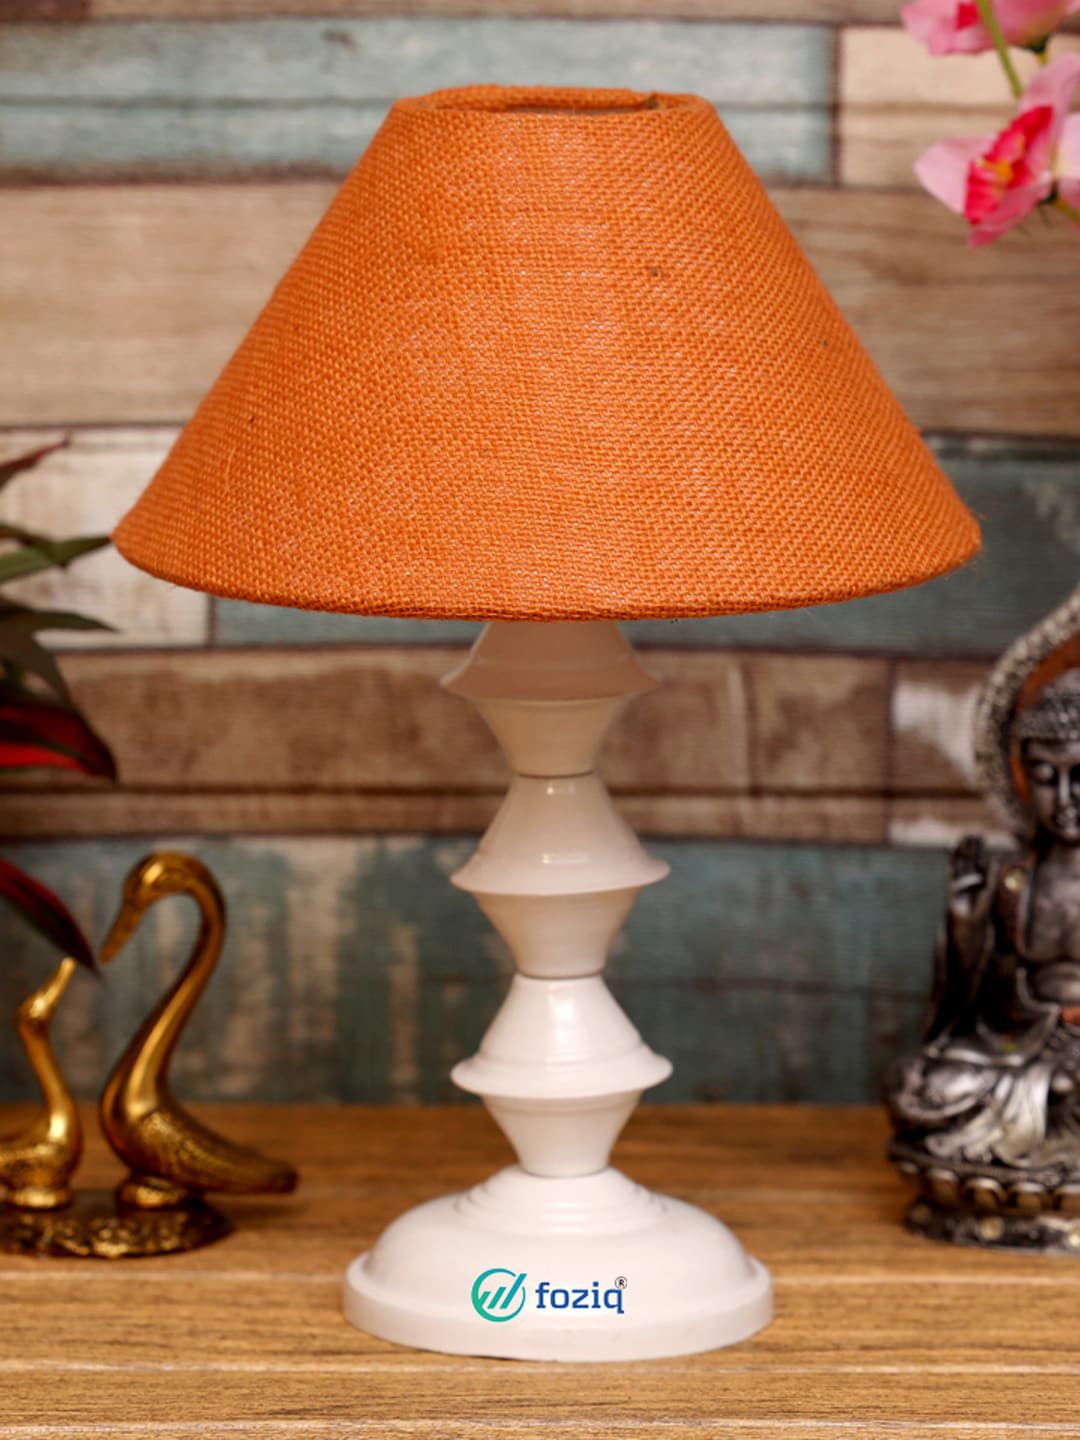 foziq White & Orange Textured Frustum Table Lamp Price in India